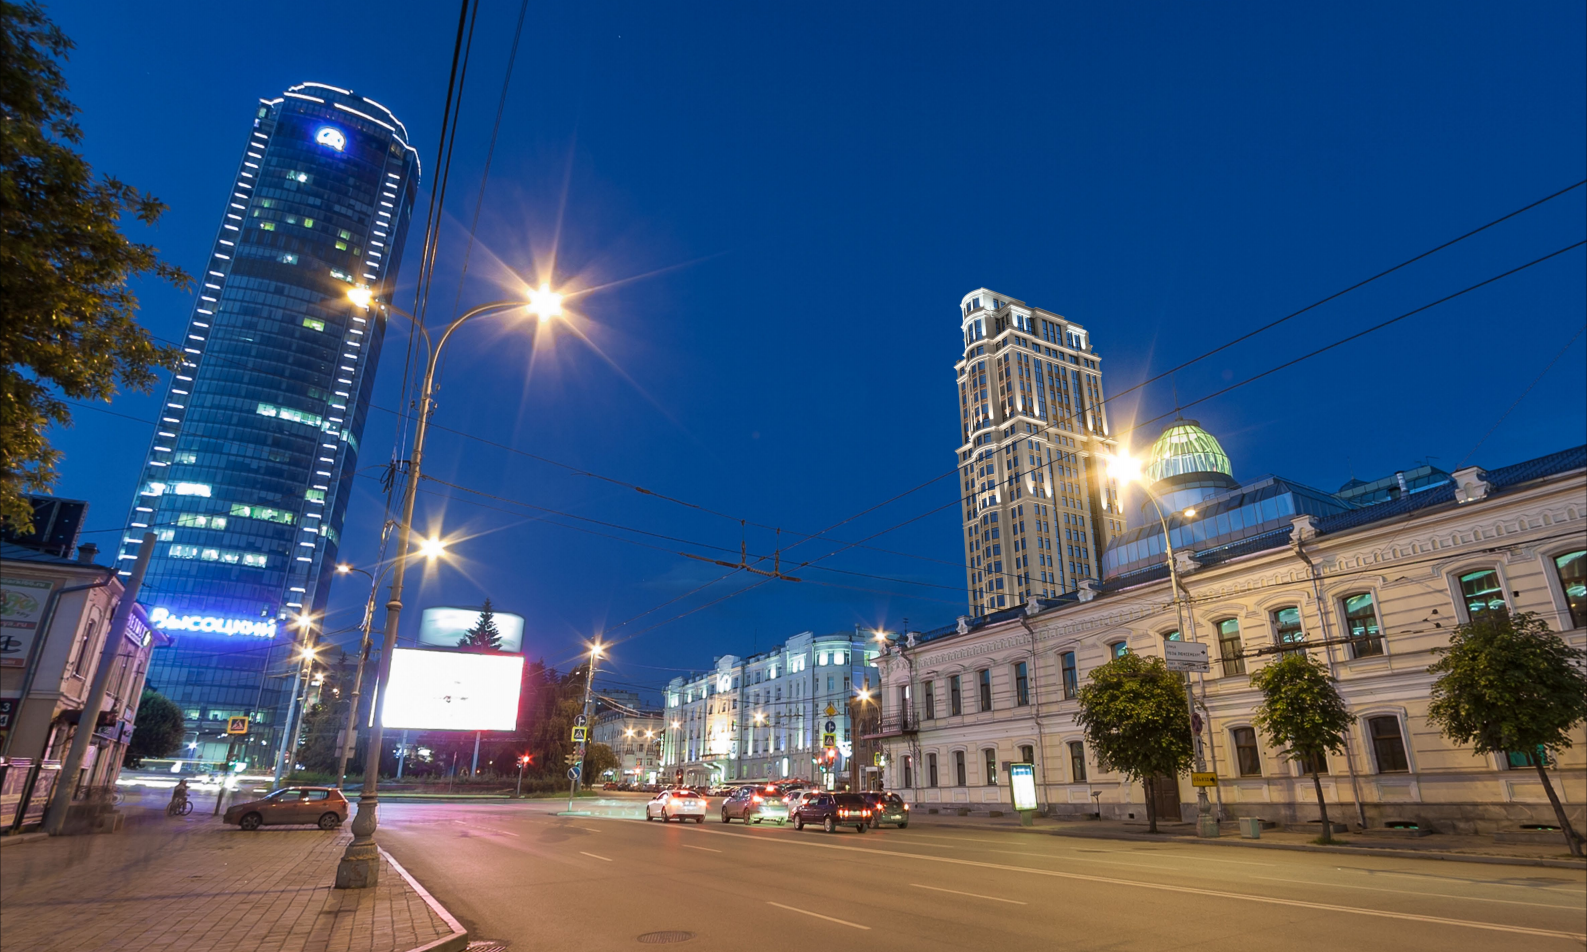 Екатеринбург центр города